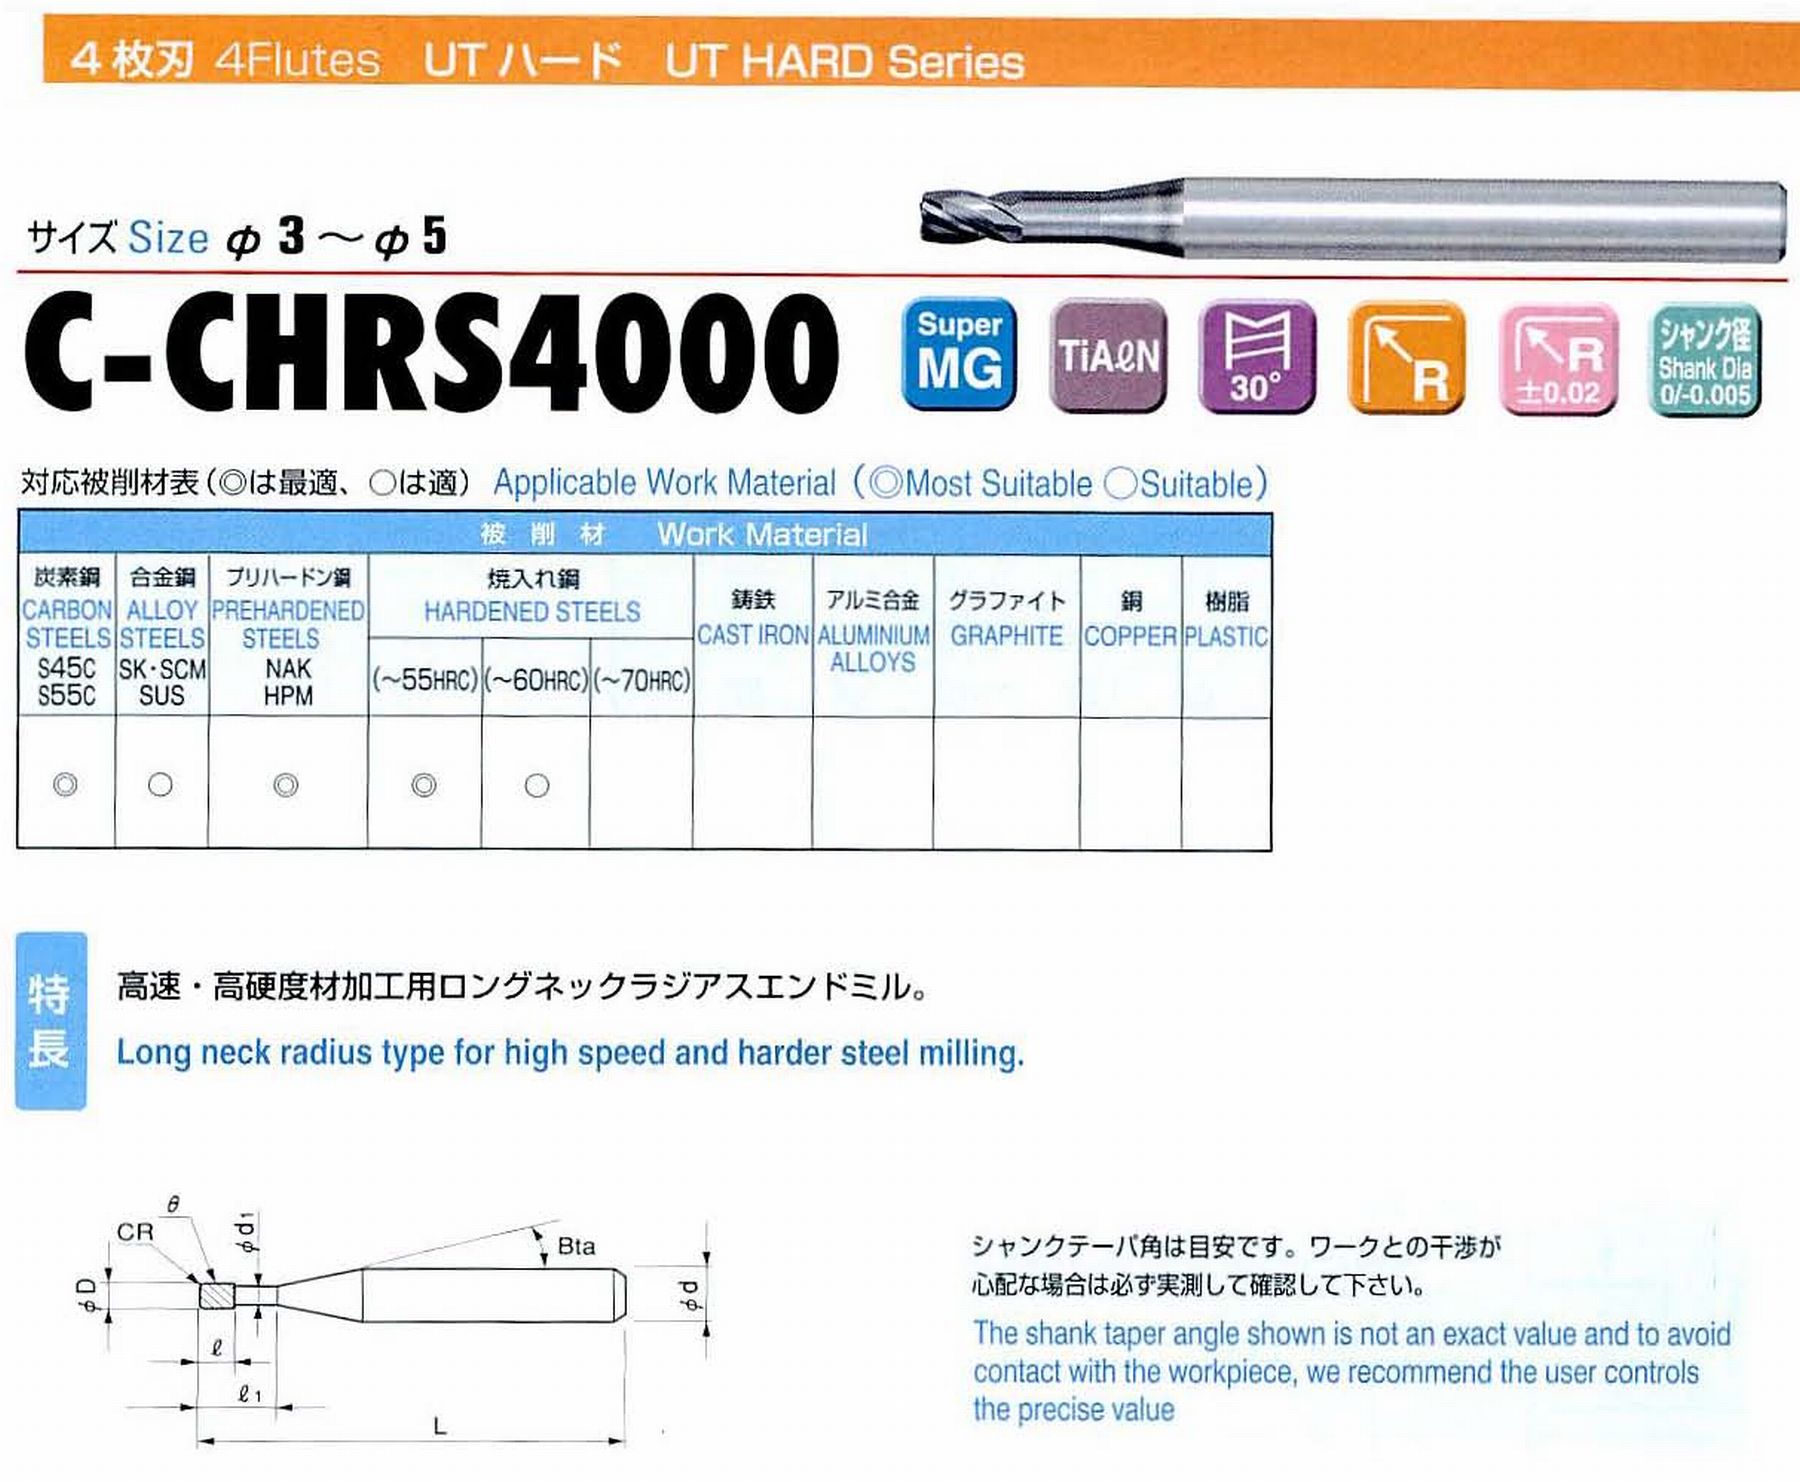 ユニオンツール 4枚刃 C-CHRS4050-05-160 外径5 コーナ半径R0.5 有効長16 刃長5 首径4.91 シャンクテーパ角11° 全長60 シャンク径6